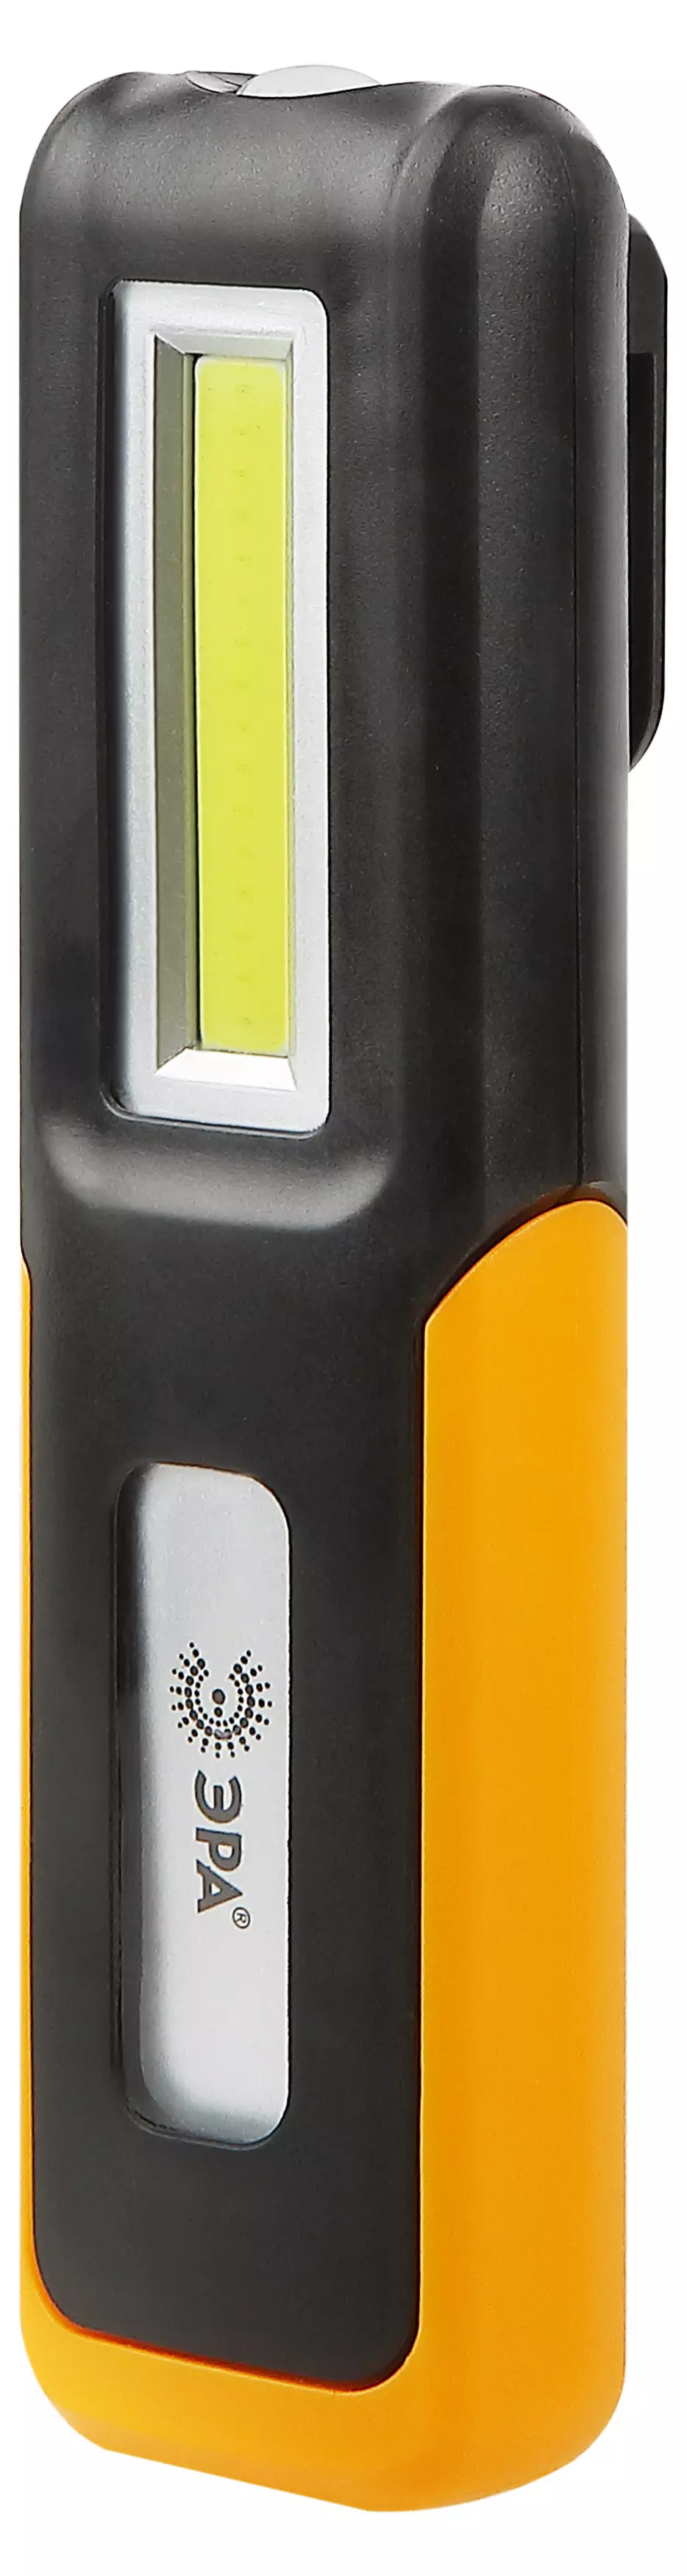 Светодиодный фонарь ЭРА Рабочие серия Практик RA-803 аккумуляторный крючок магнит miscro USB